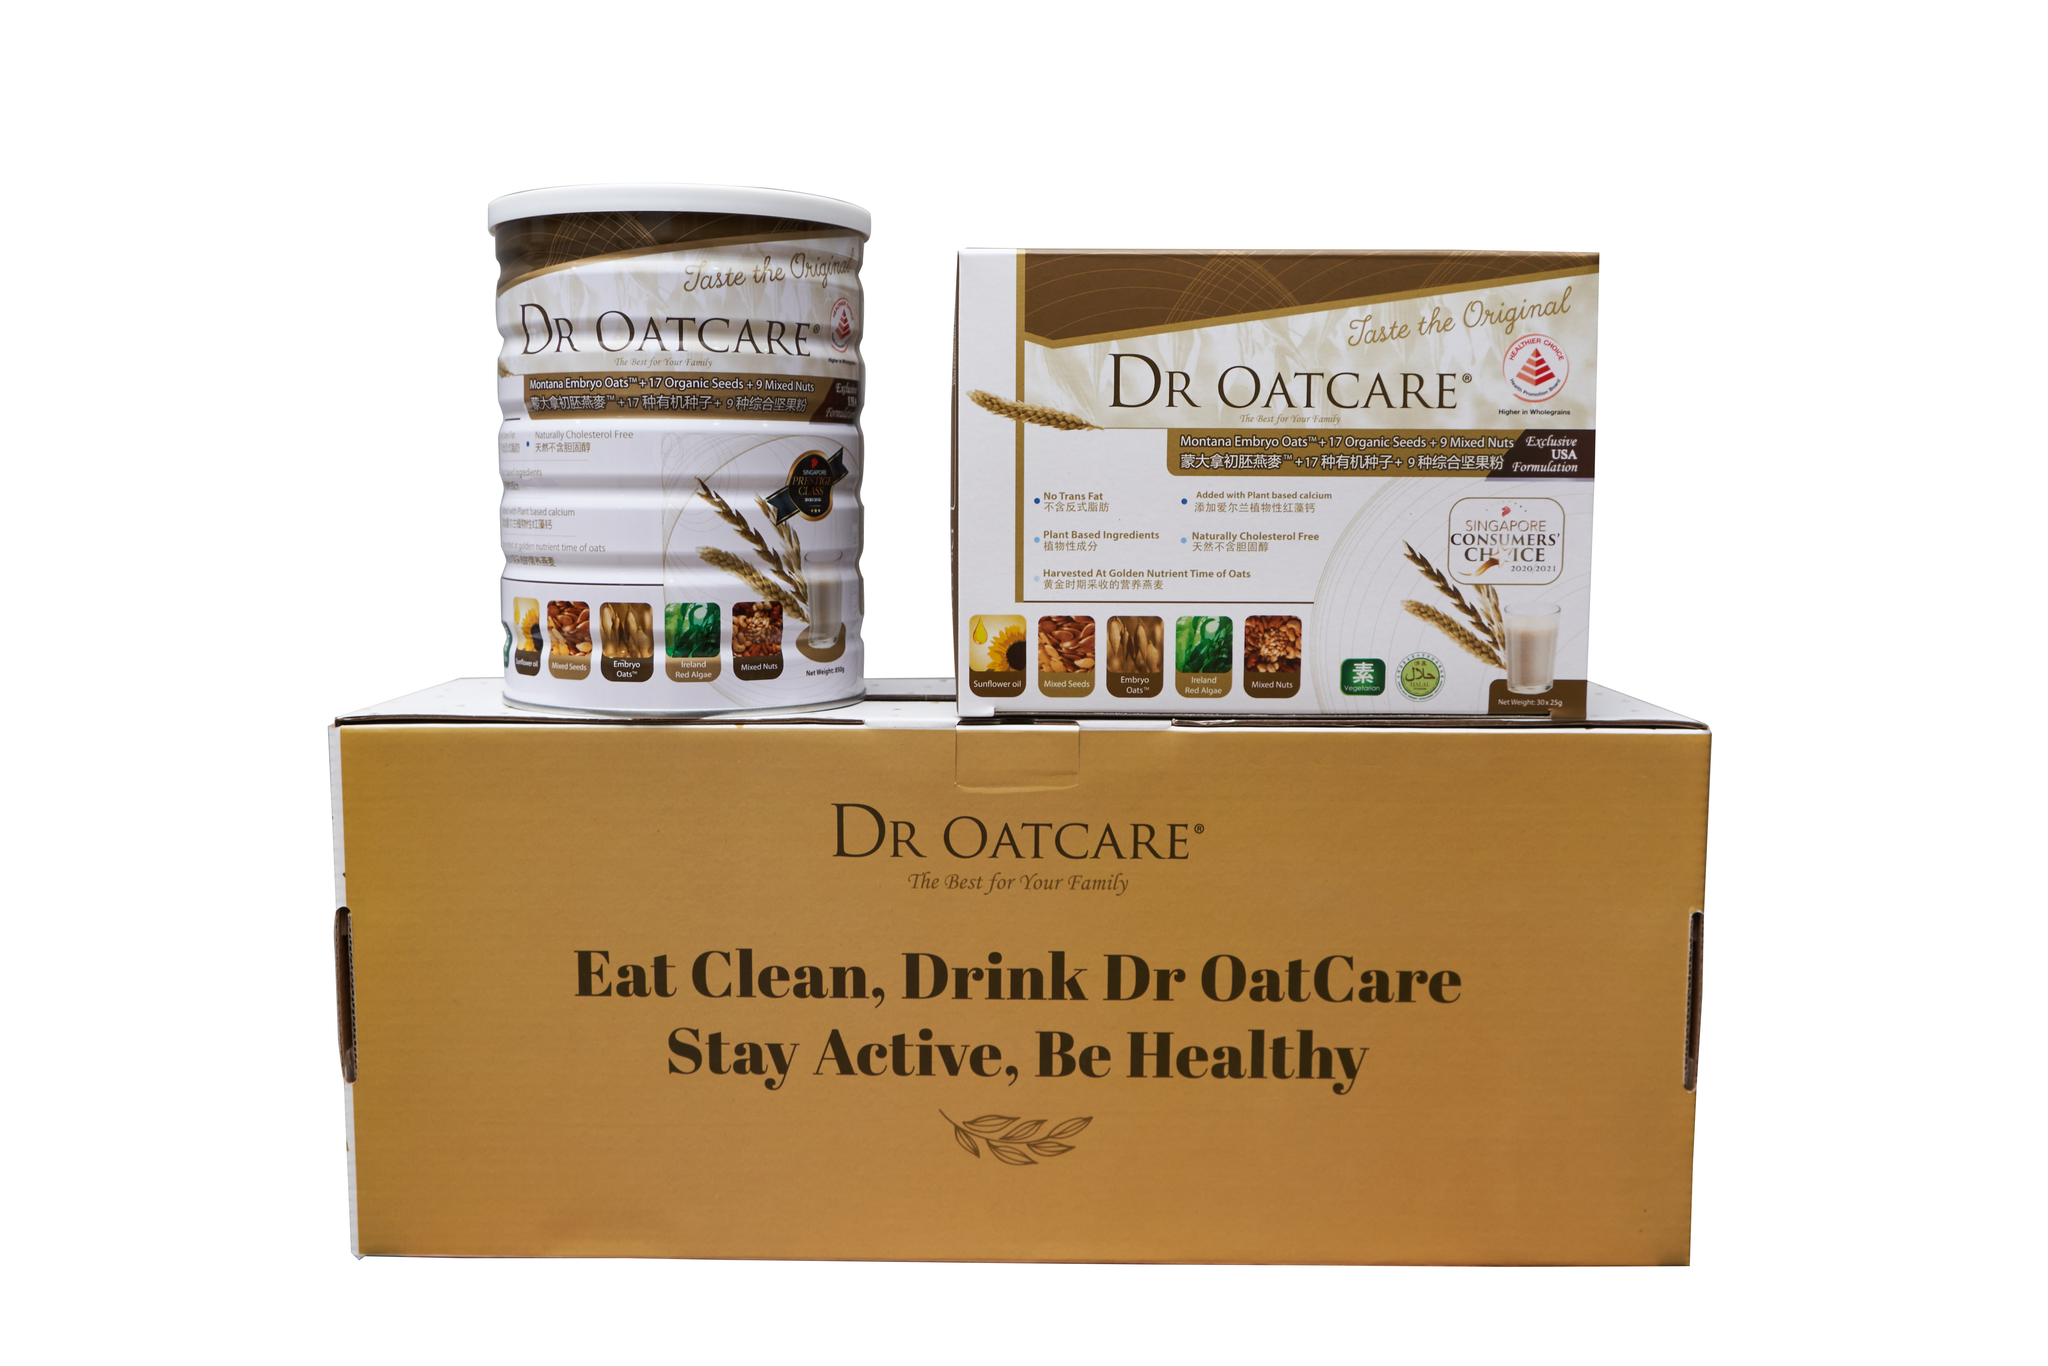 Dr Oatcare 2 sản phẩm trong hộp quà tặng